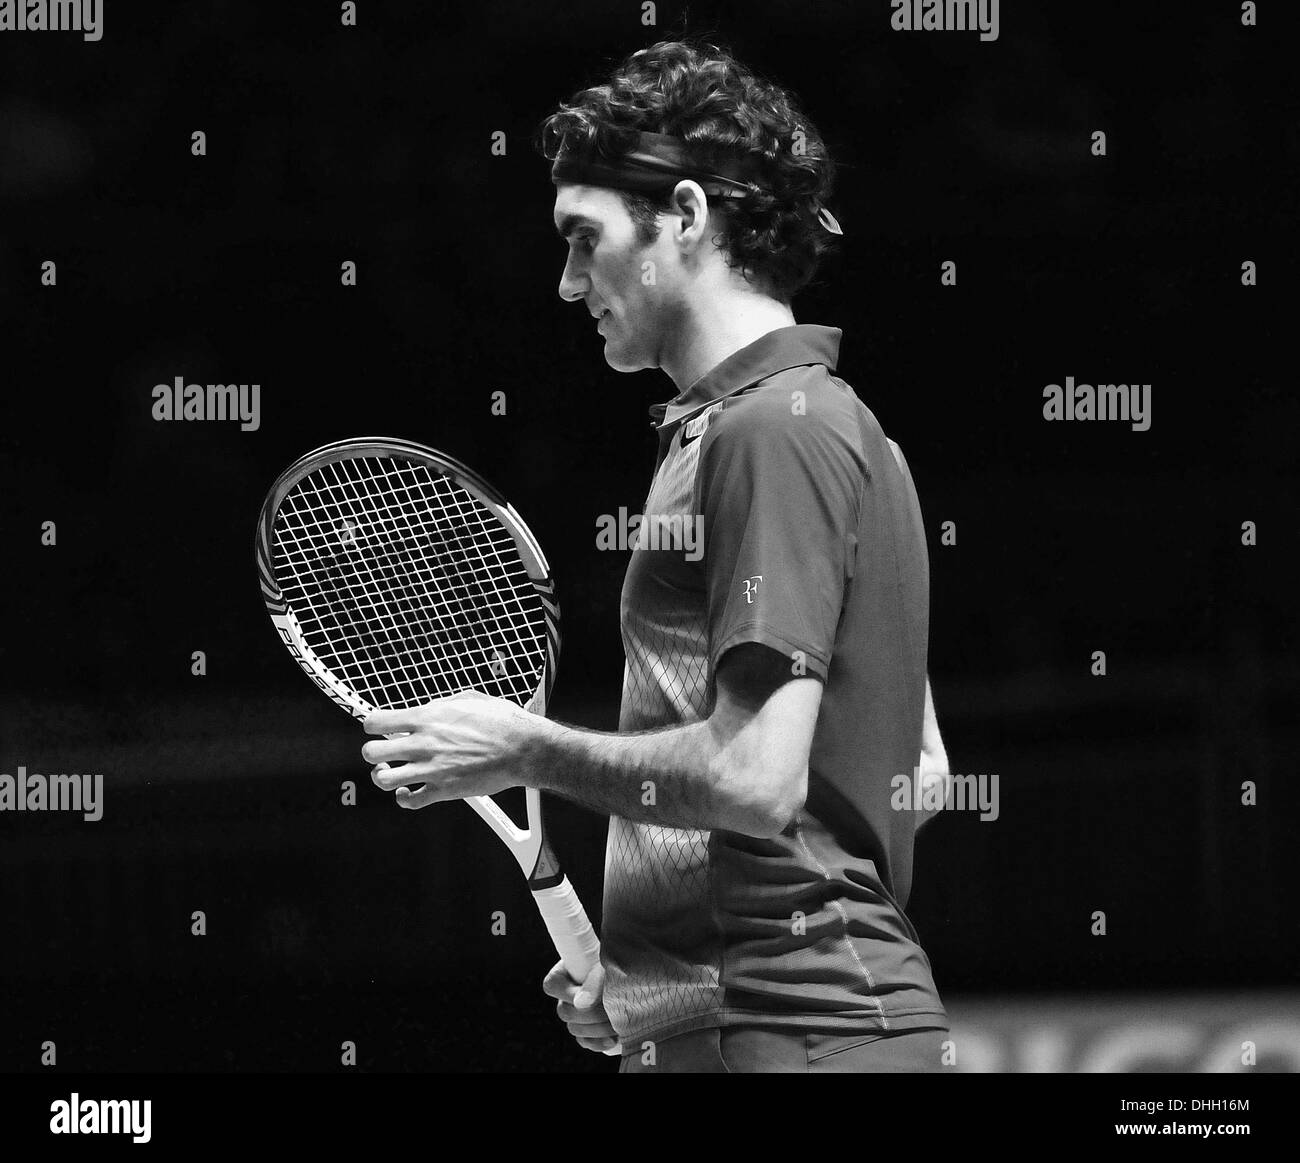 Roger Federer la suisse en action contre l'Espagne Rafael Nadal, lors de la demi-finale de l'ATP masculin. Banque D'Images